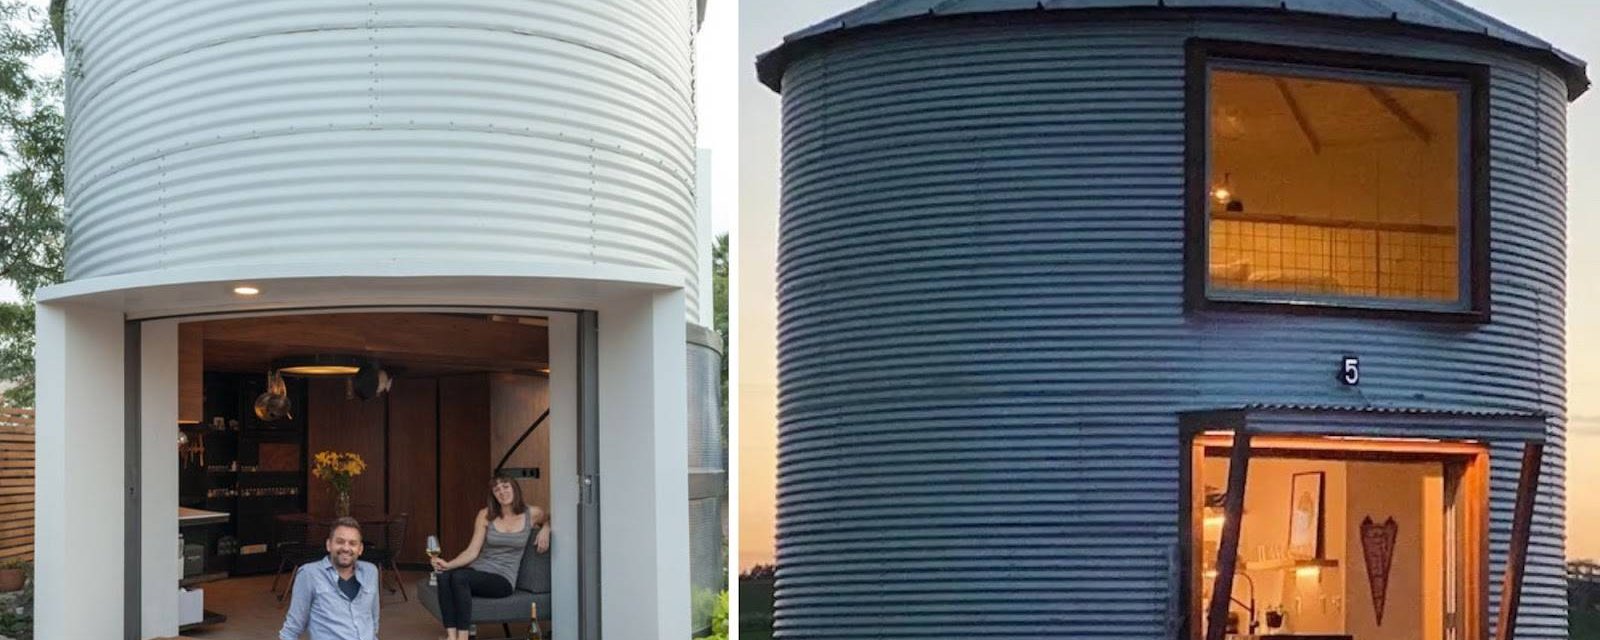 La vie dans un silo transformé, ça vous dit?